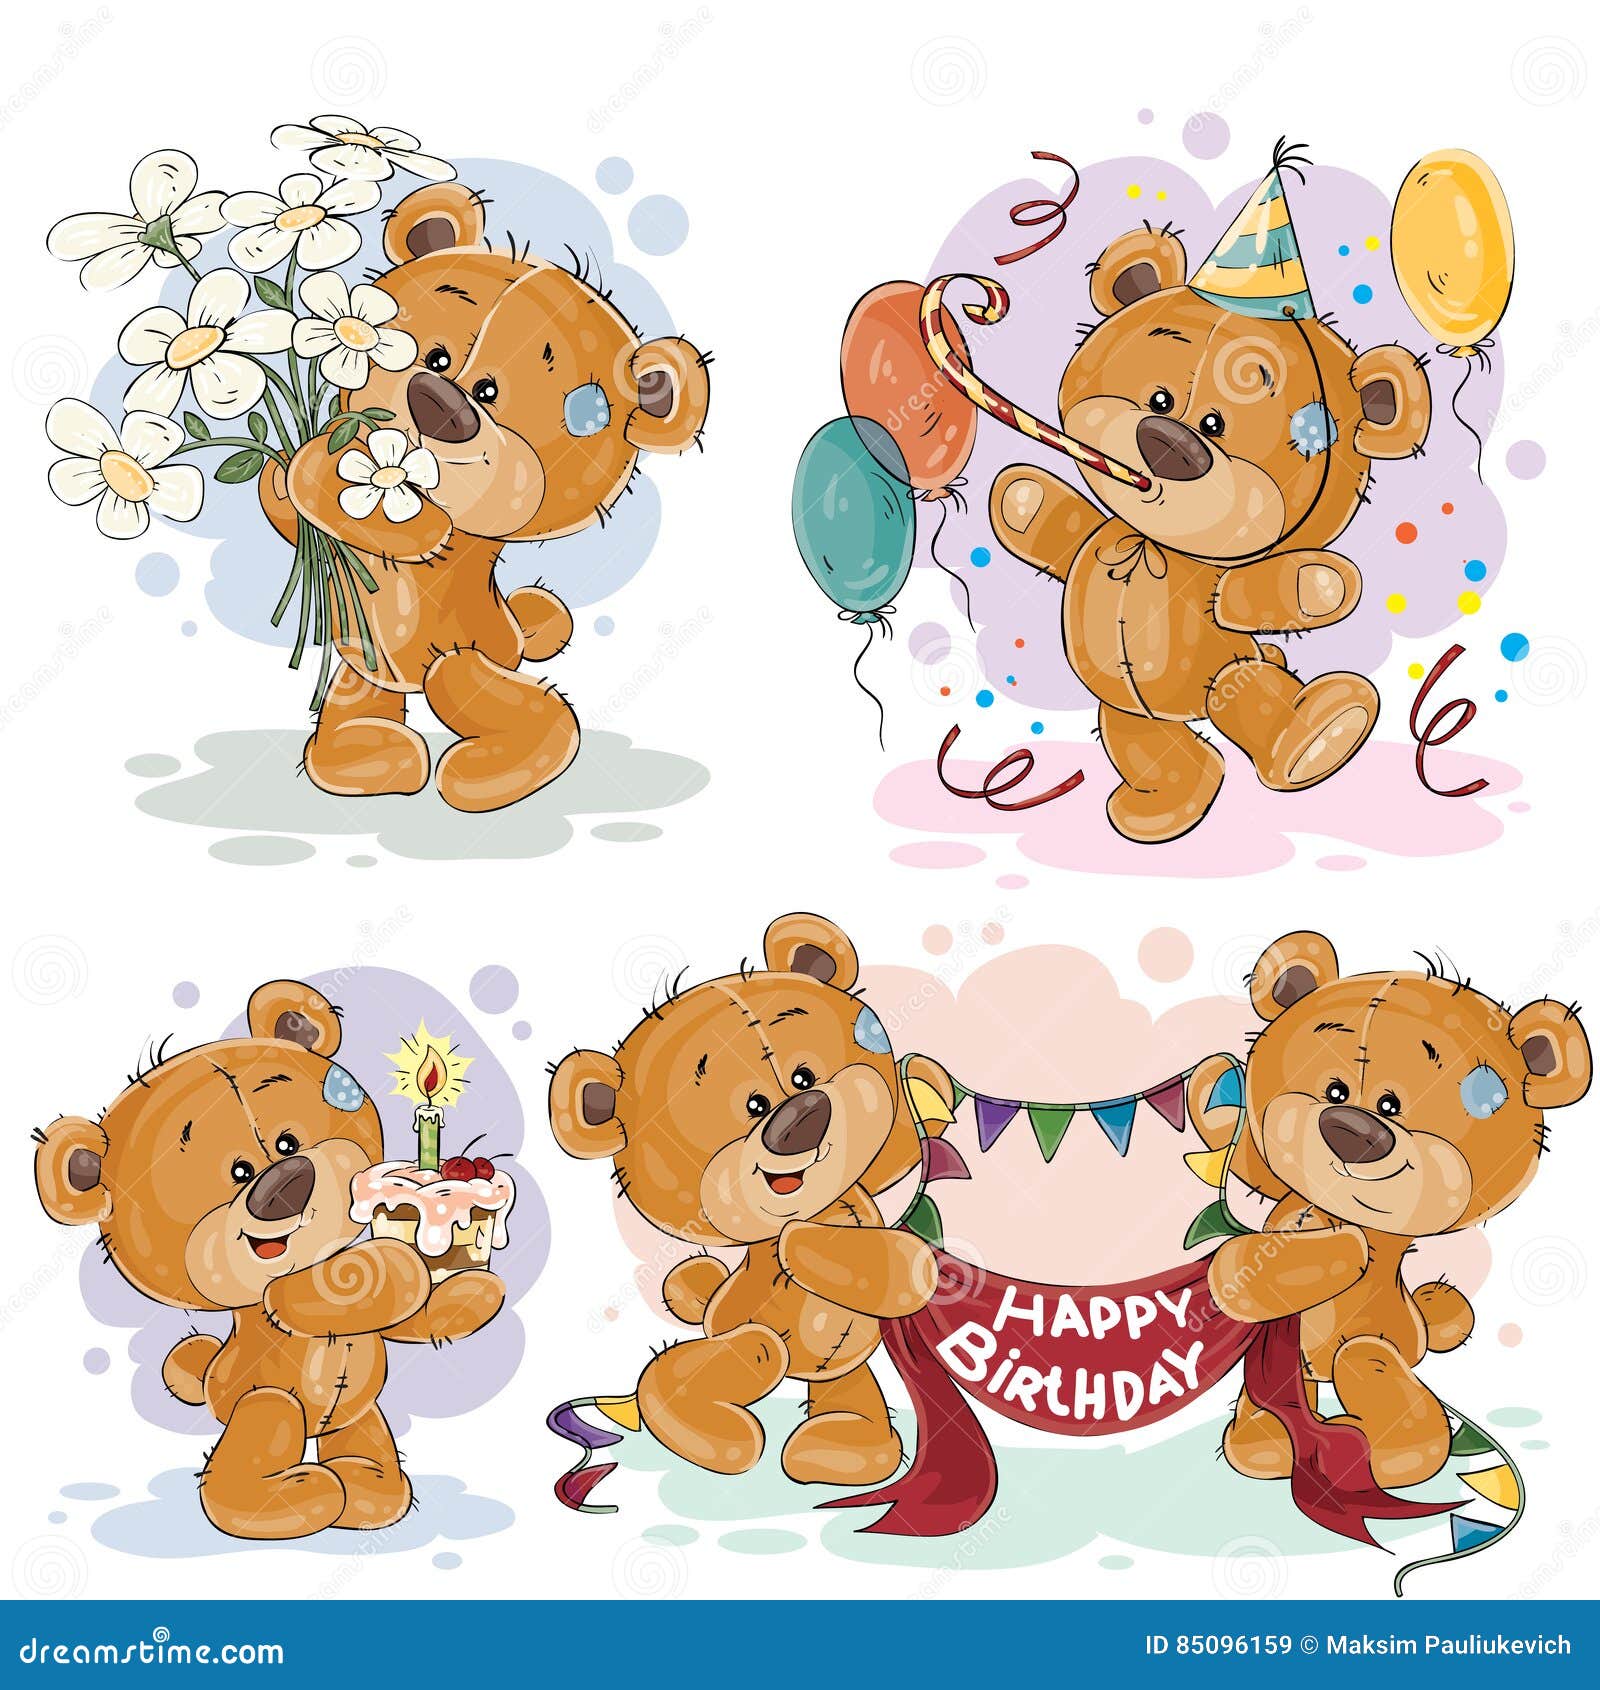 teddy bear birthday clipart - photo #47